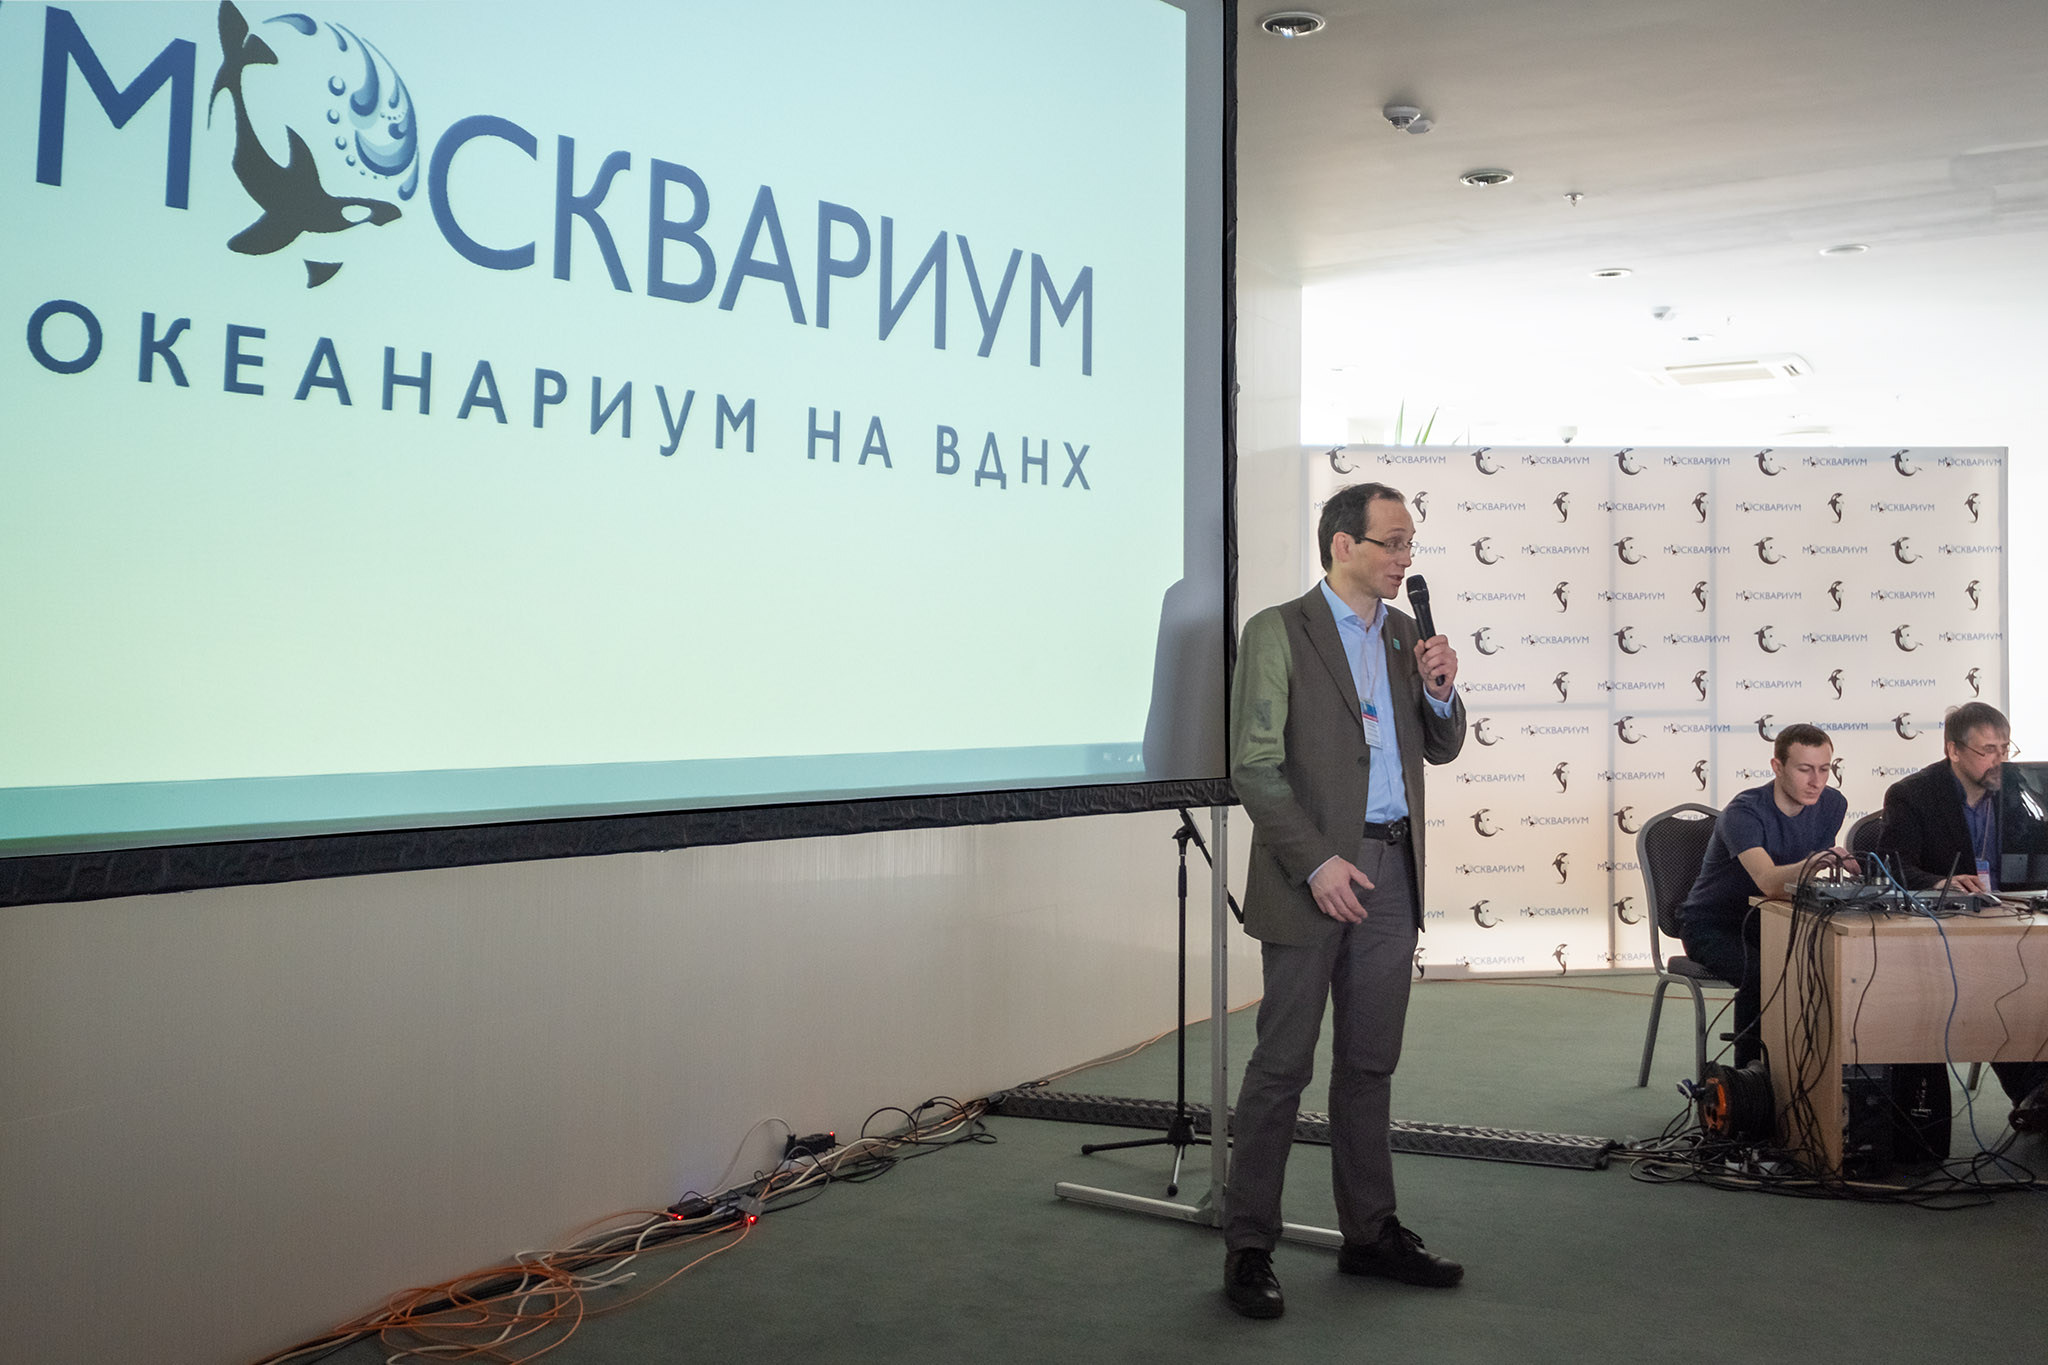 Открытие конференции - приветственное слово генерального директора компании Аква Лого инжиниринг Алексея Леонидовича Казакевича